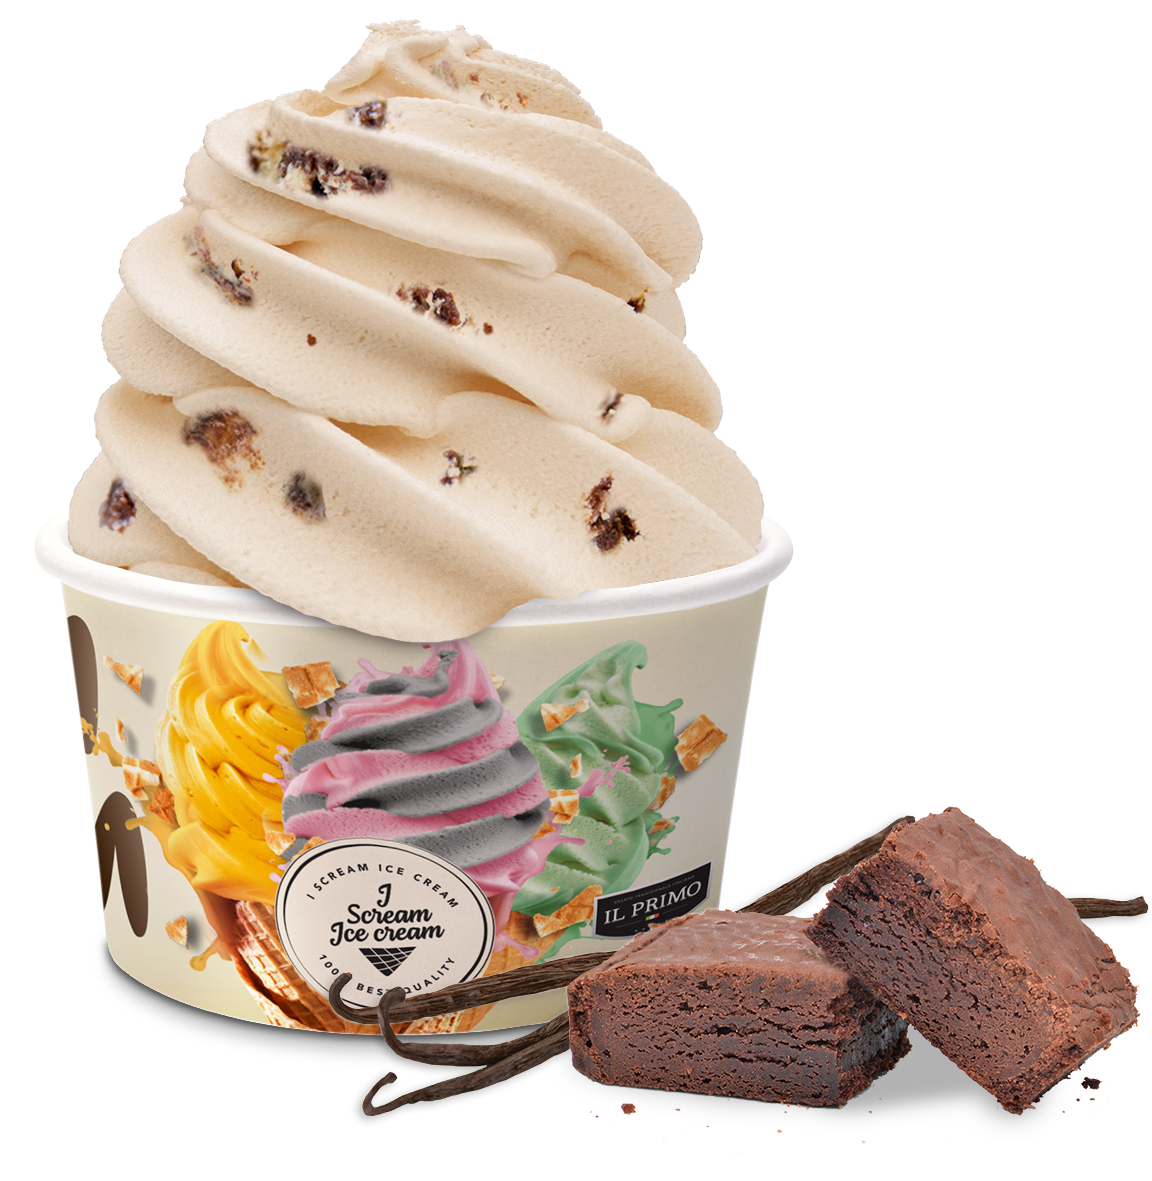 Ice cream med vanilje og brownie is smag i bæger